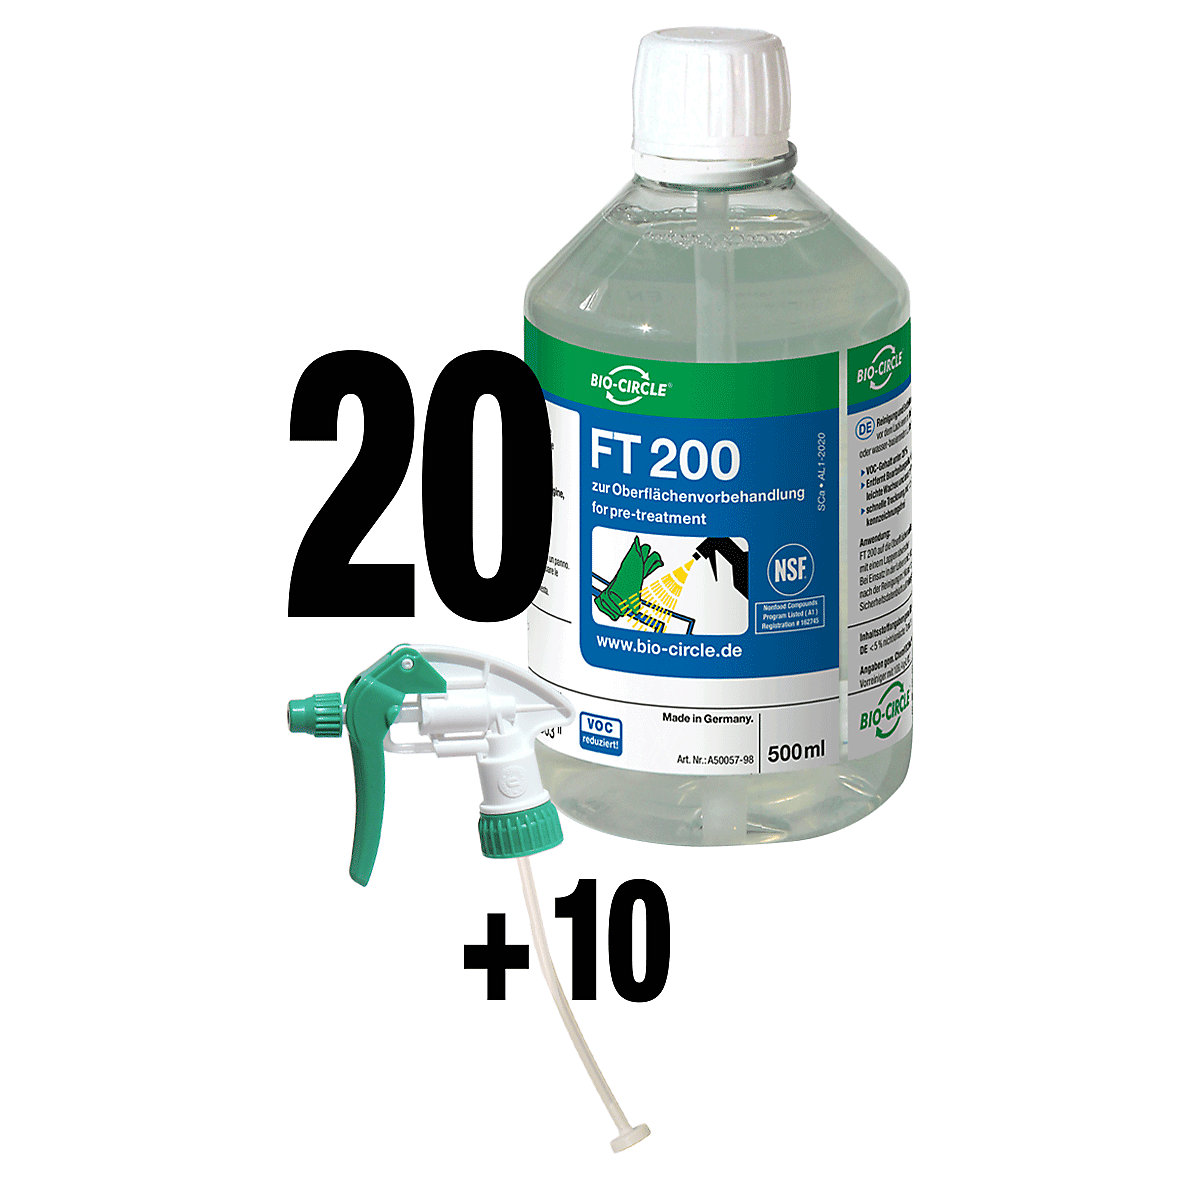 FT 200 cleaner – Bio-Circle